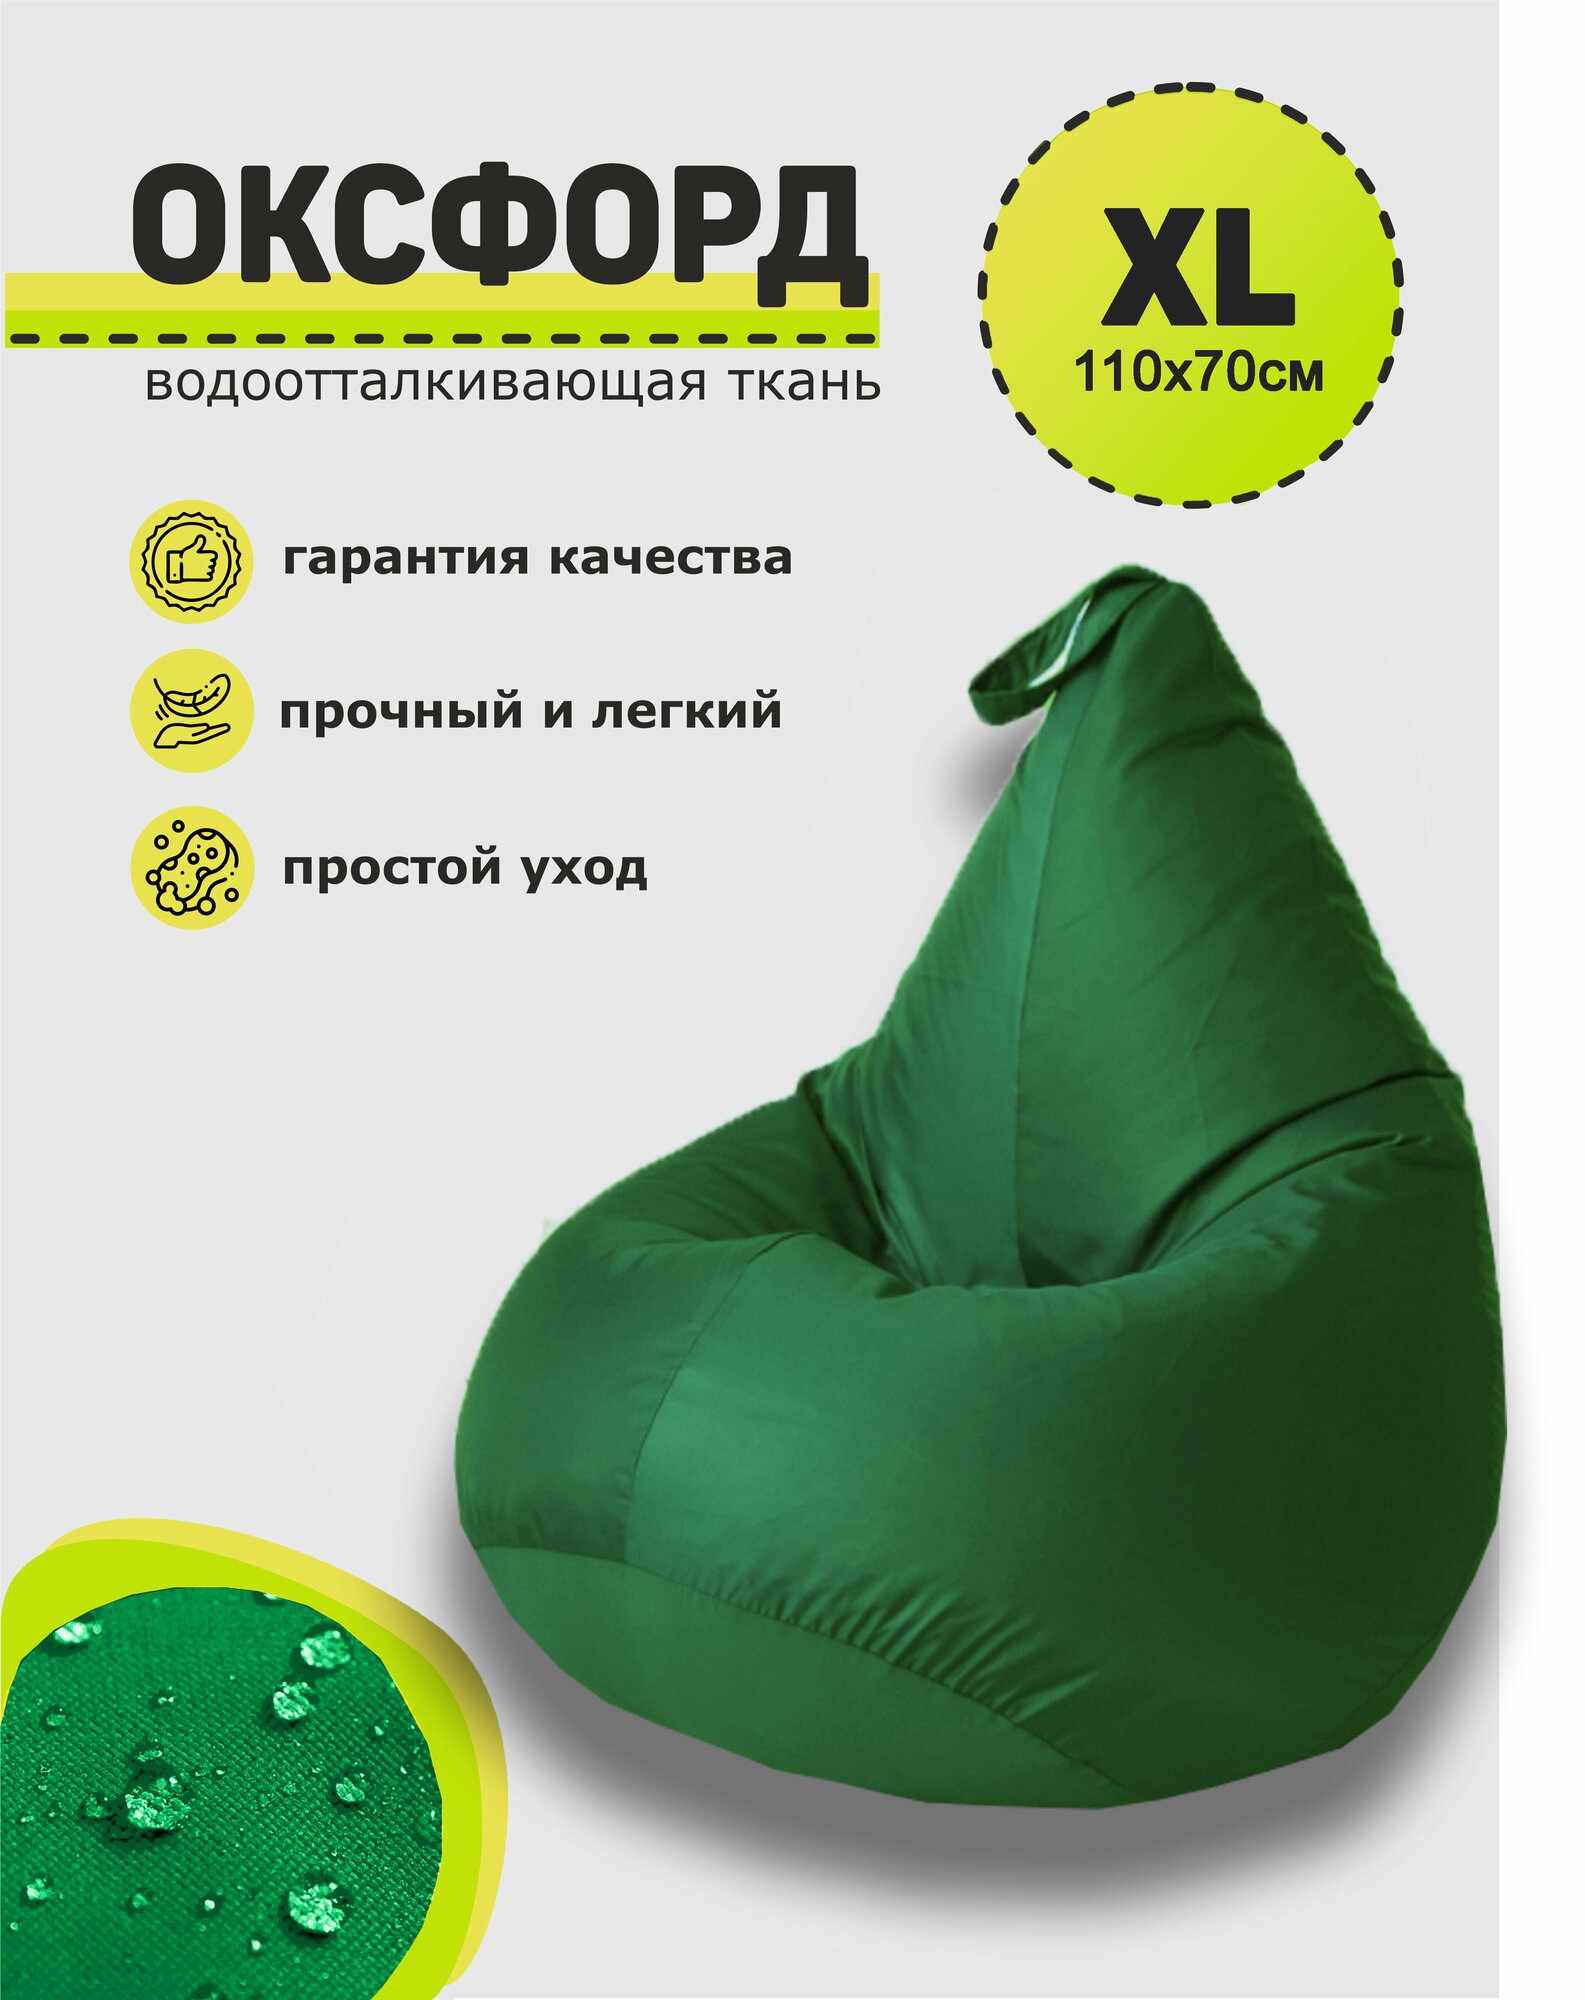 Кресло-мешок, 3D Мебель, Оксфорд, Размер 1XL, цвет "Зеленый"